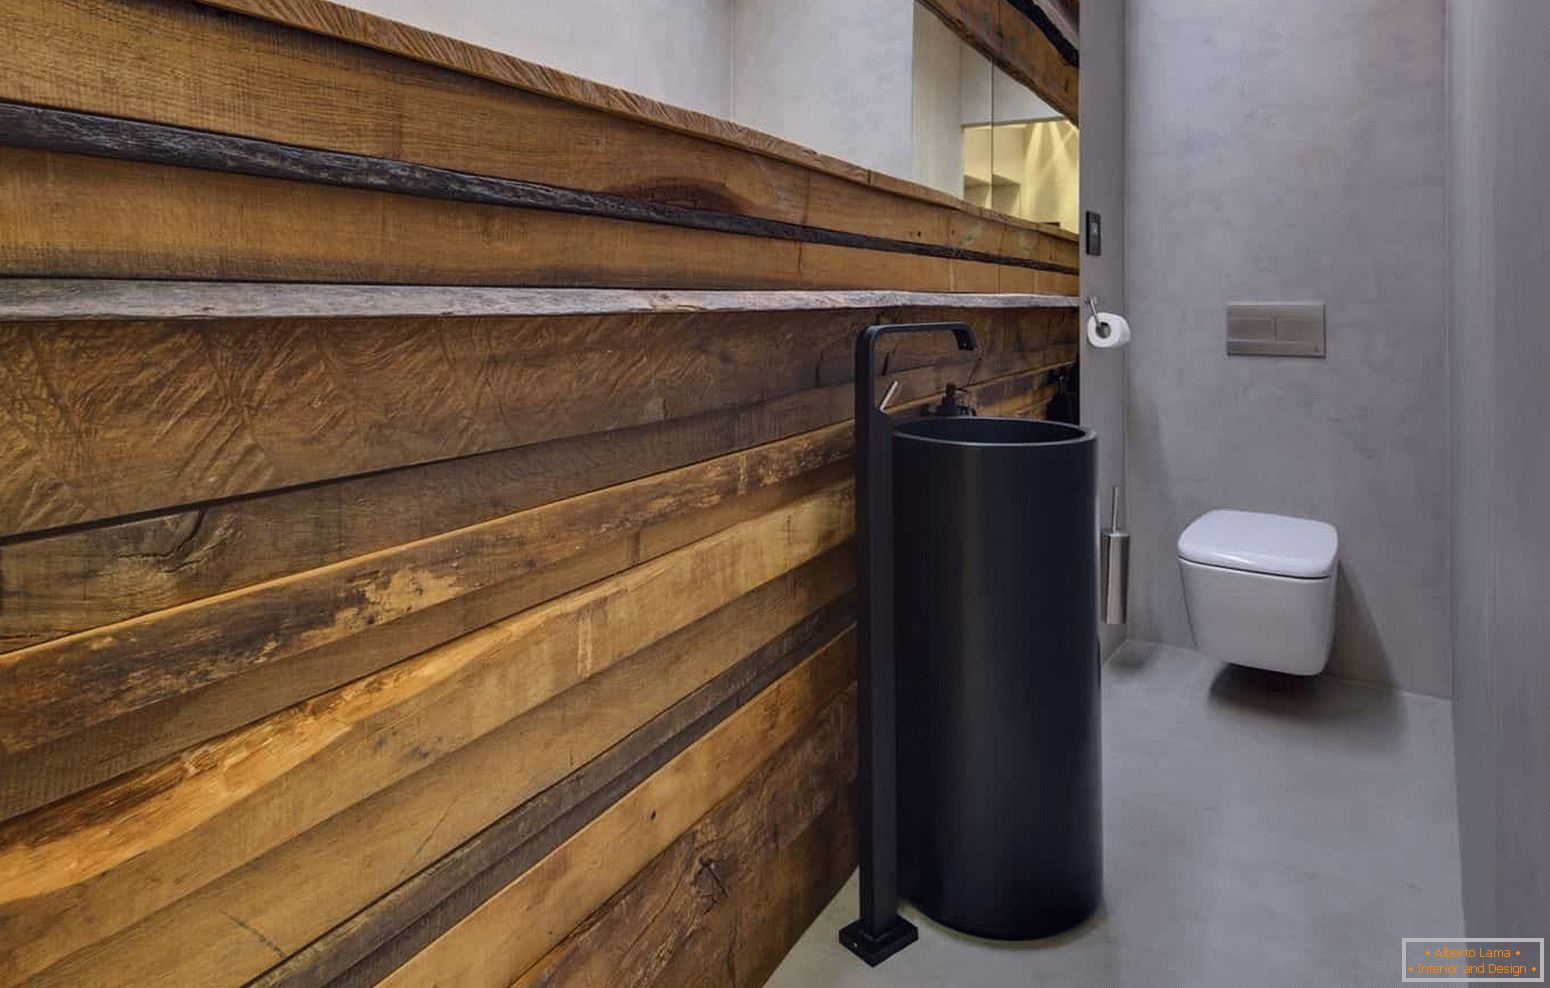 Moderni dizajn malog wc-a u ekološkom stilu s neobičnim ljuskom